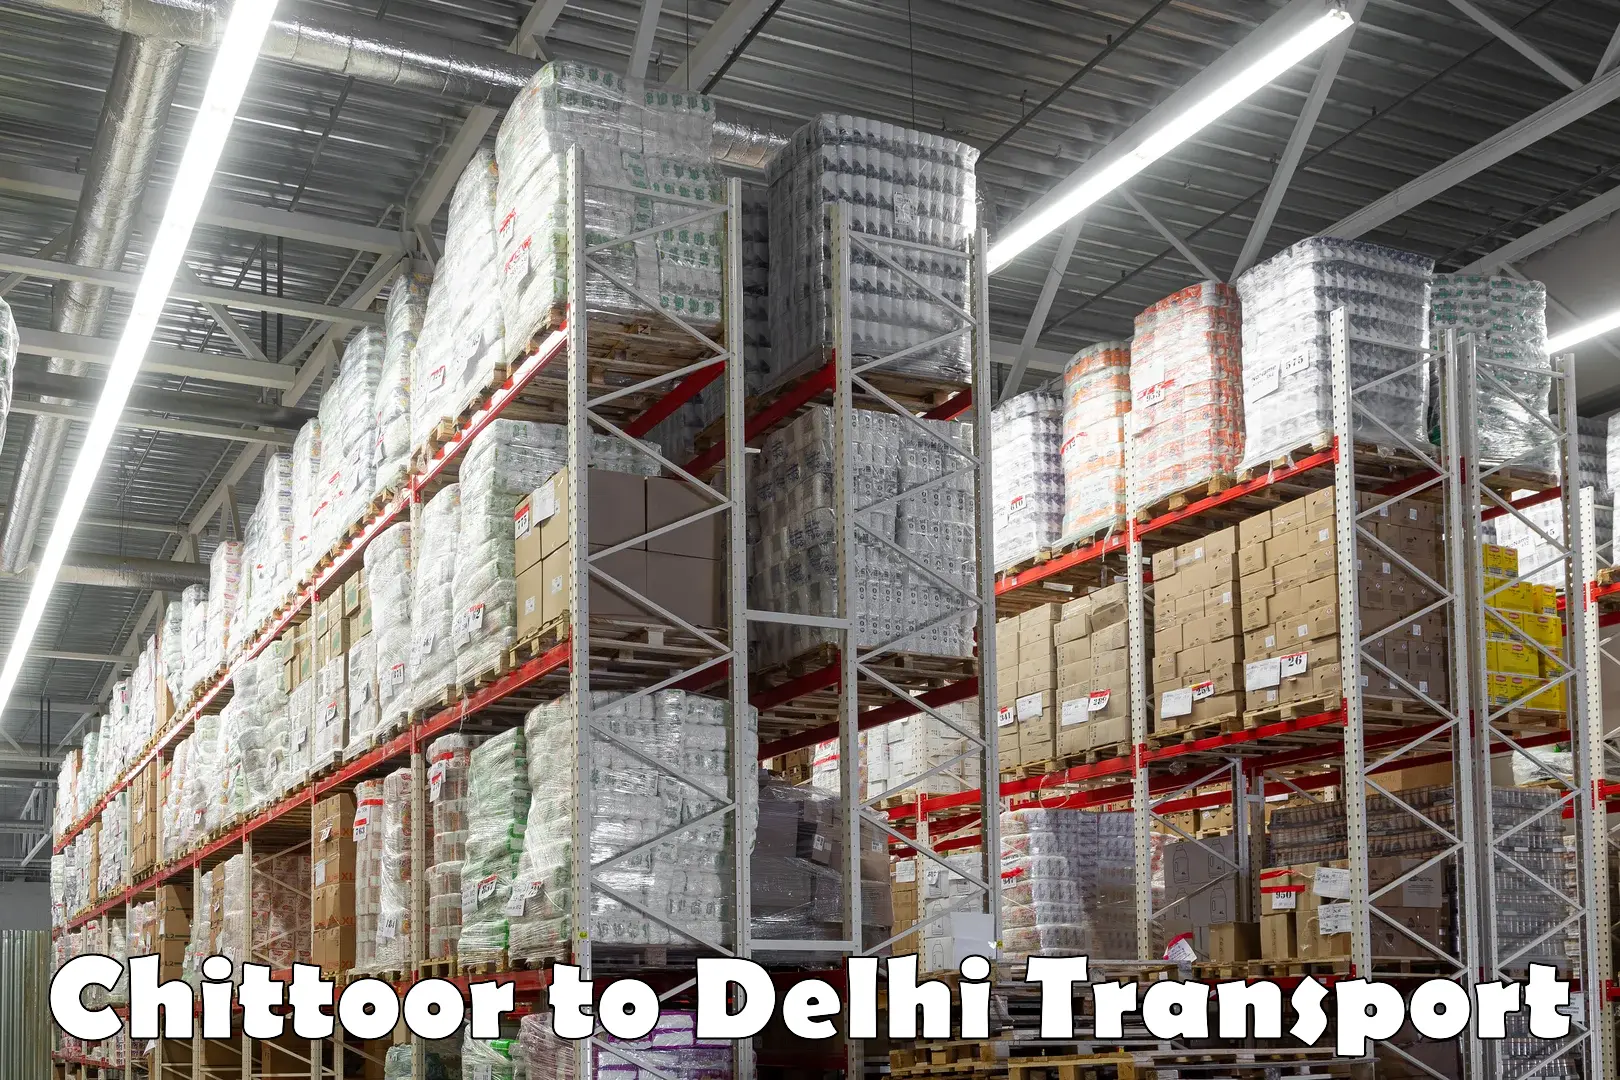 Interstate transport services Chittoor to Delhi